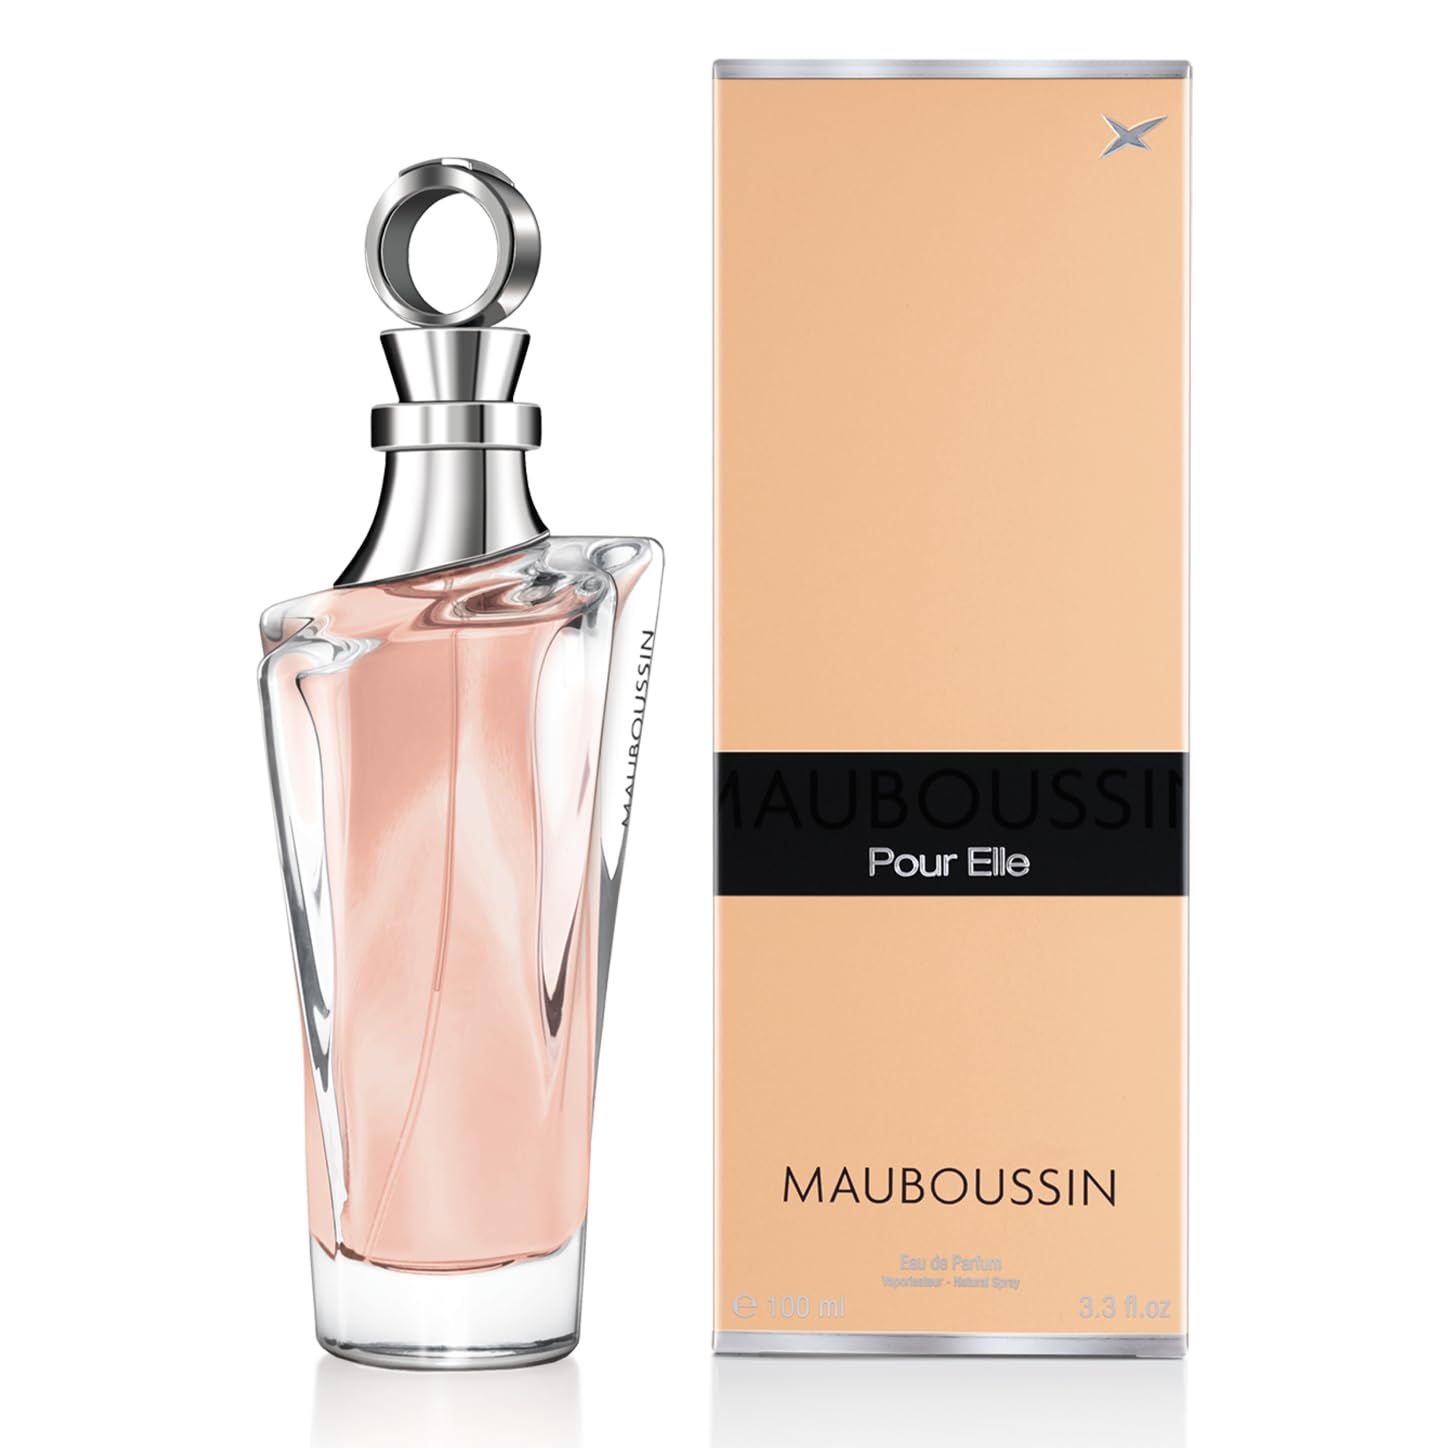 Mauboussin - Pour Elle - Eau de Parfum für Frau - Blumiger & Fruchtiger Duft - 100ml